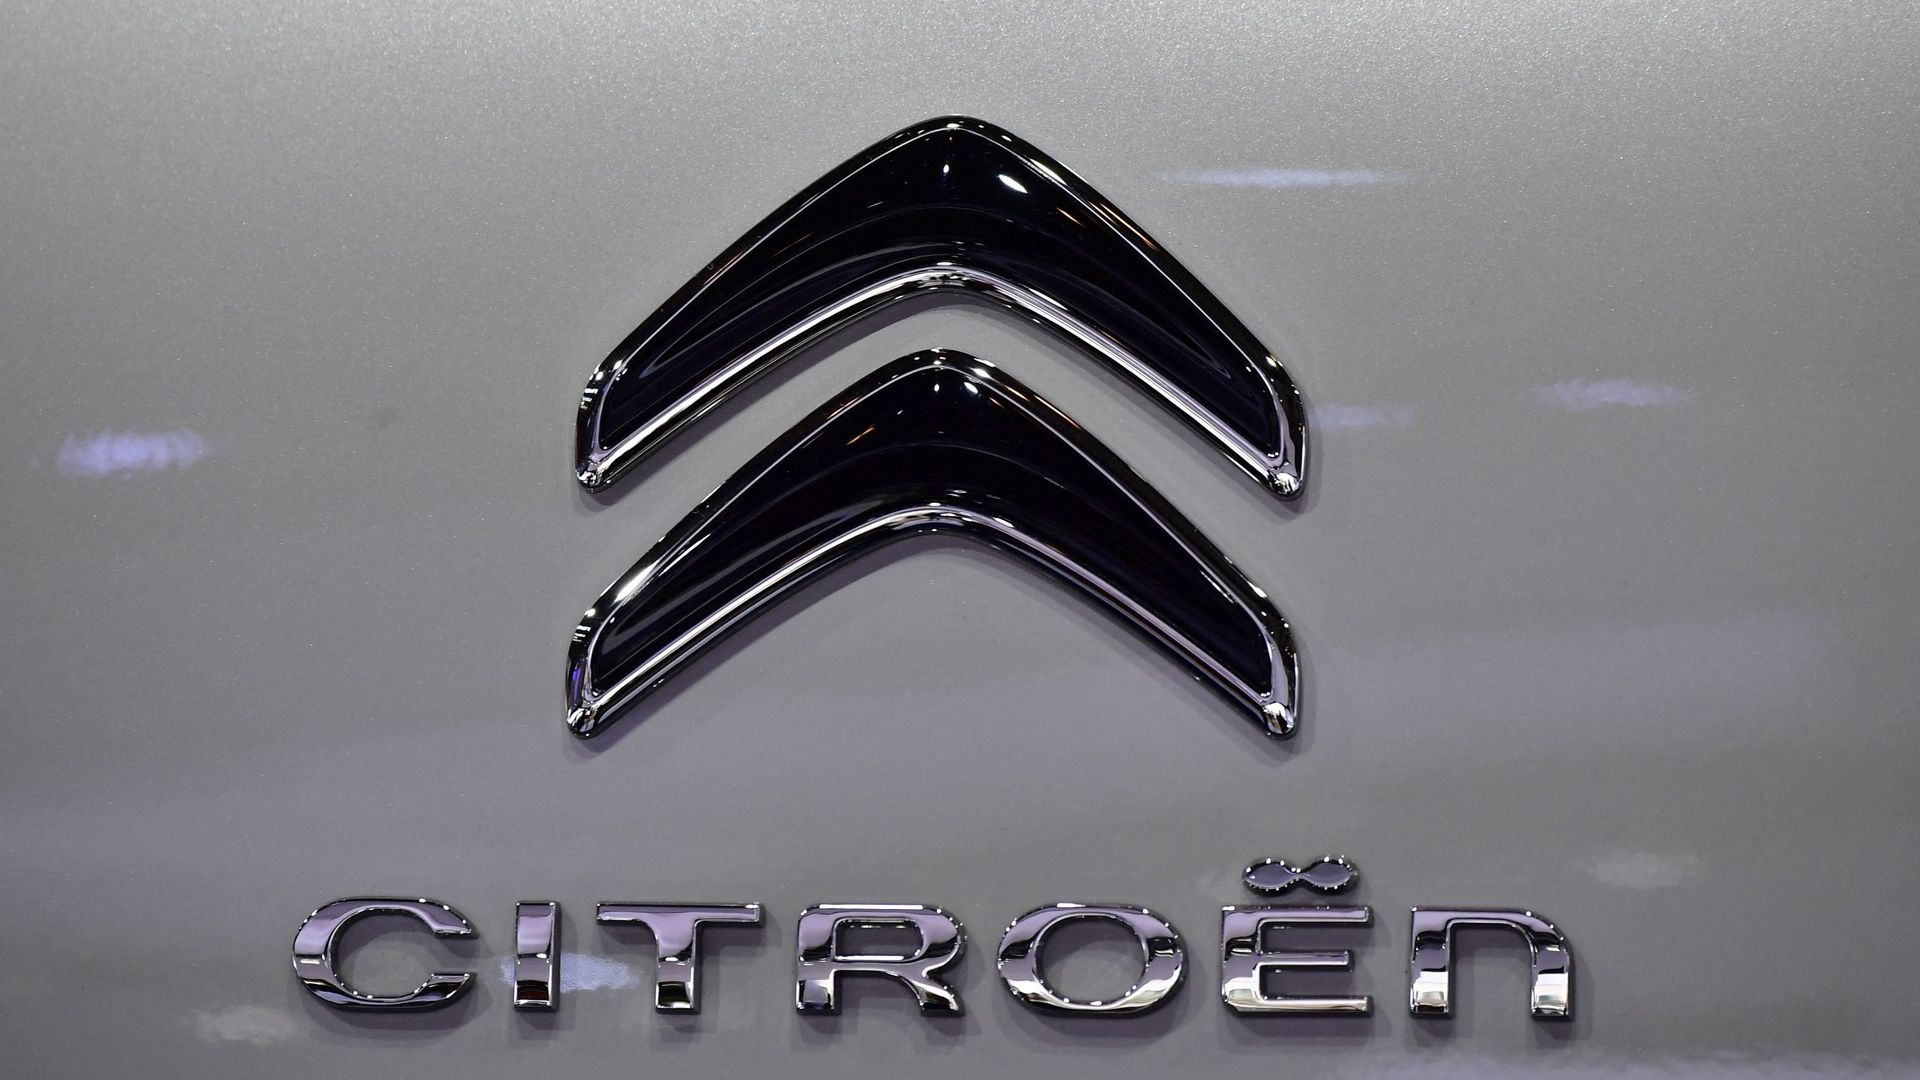 Le logo de Citroën